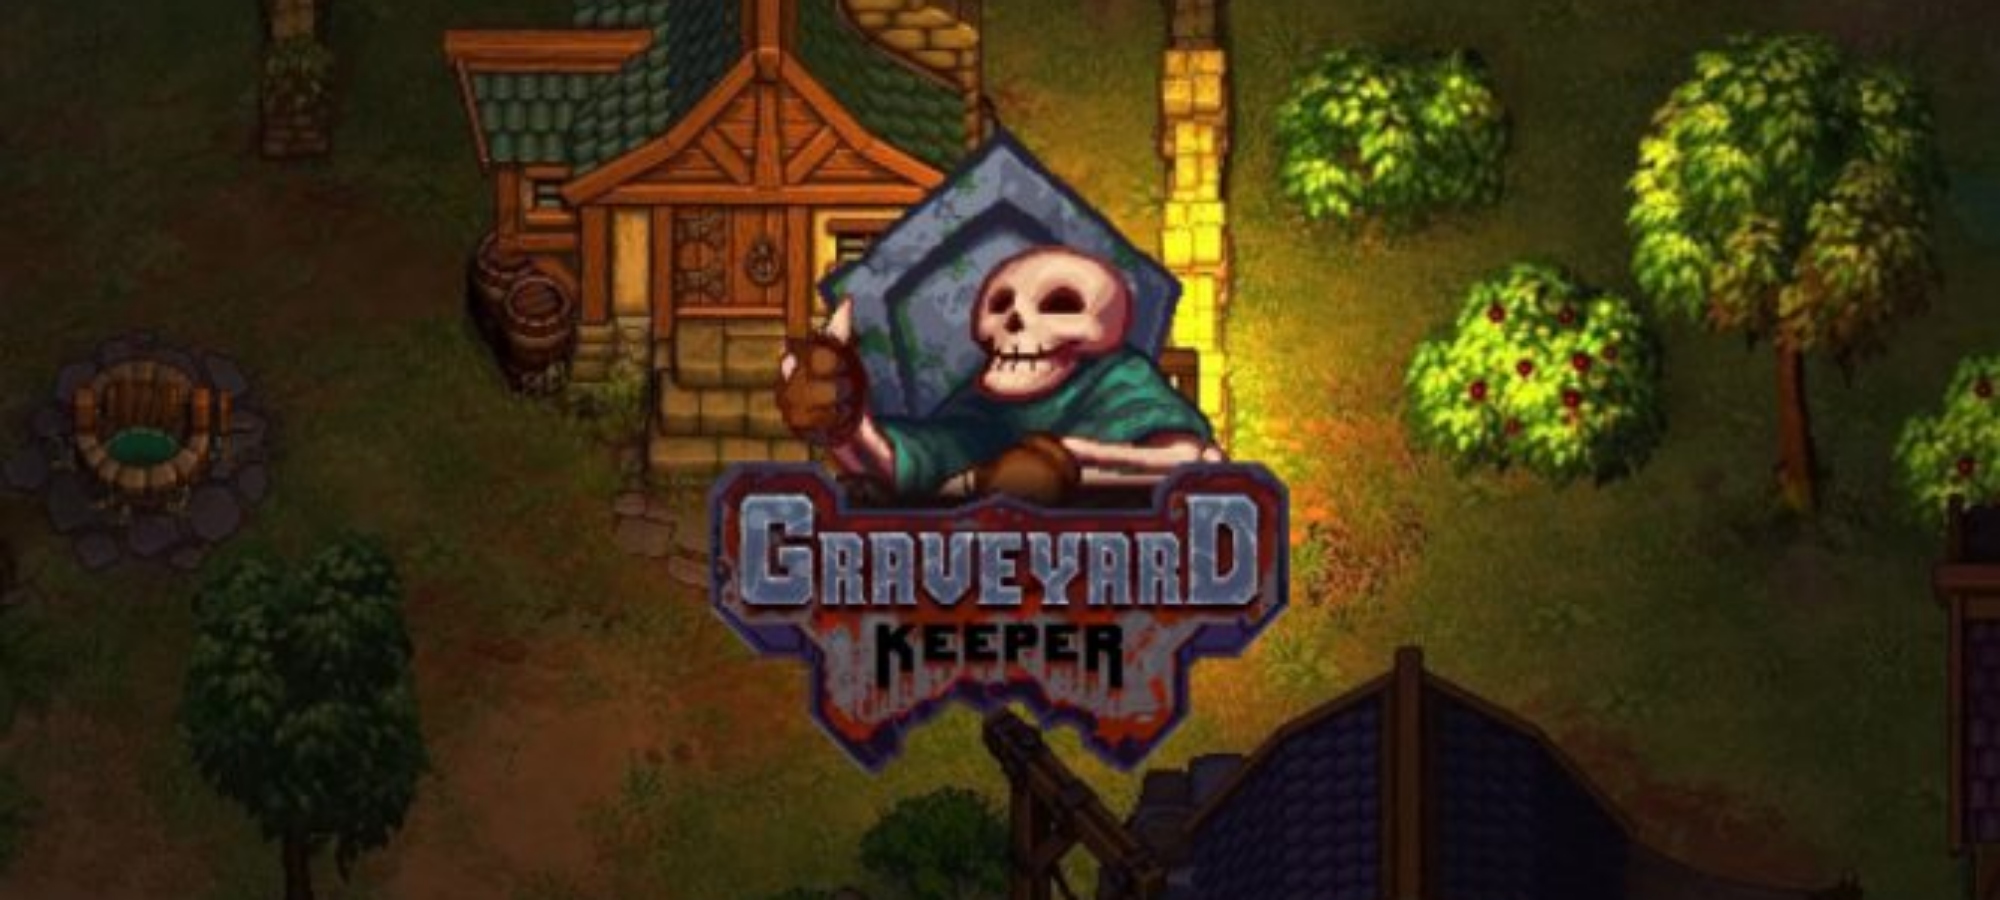 Graveyard keeper змея. Хранитель Graveyard Keeper. Симулятор могильщика. Игра про могильщика 2д. Игра про могильщика и череп.